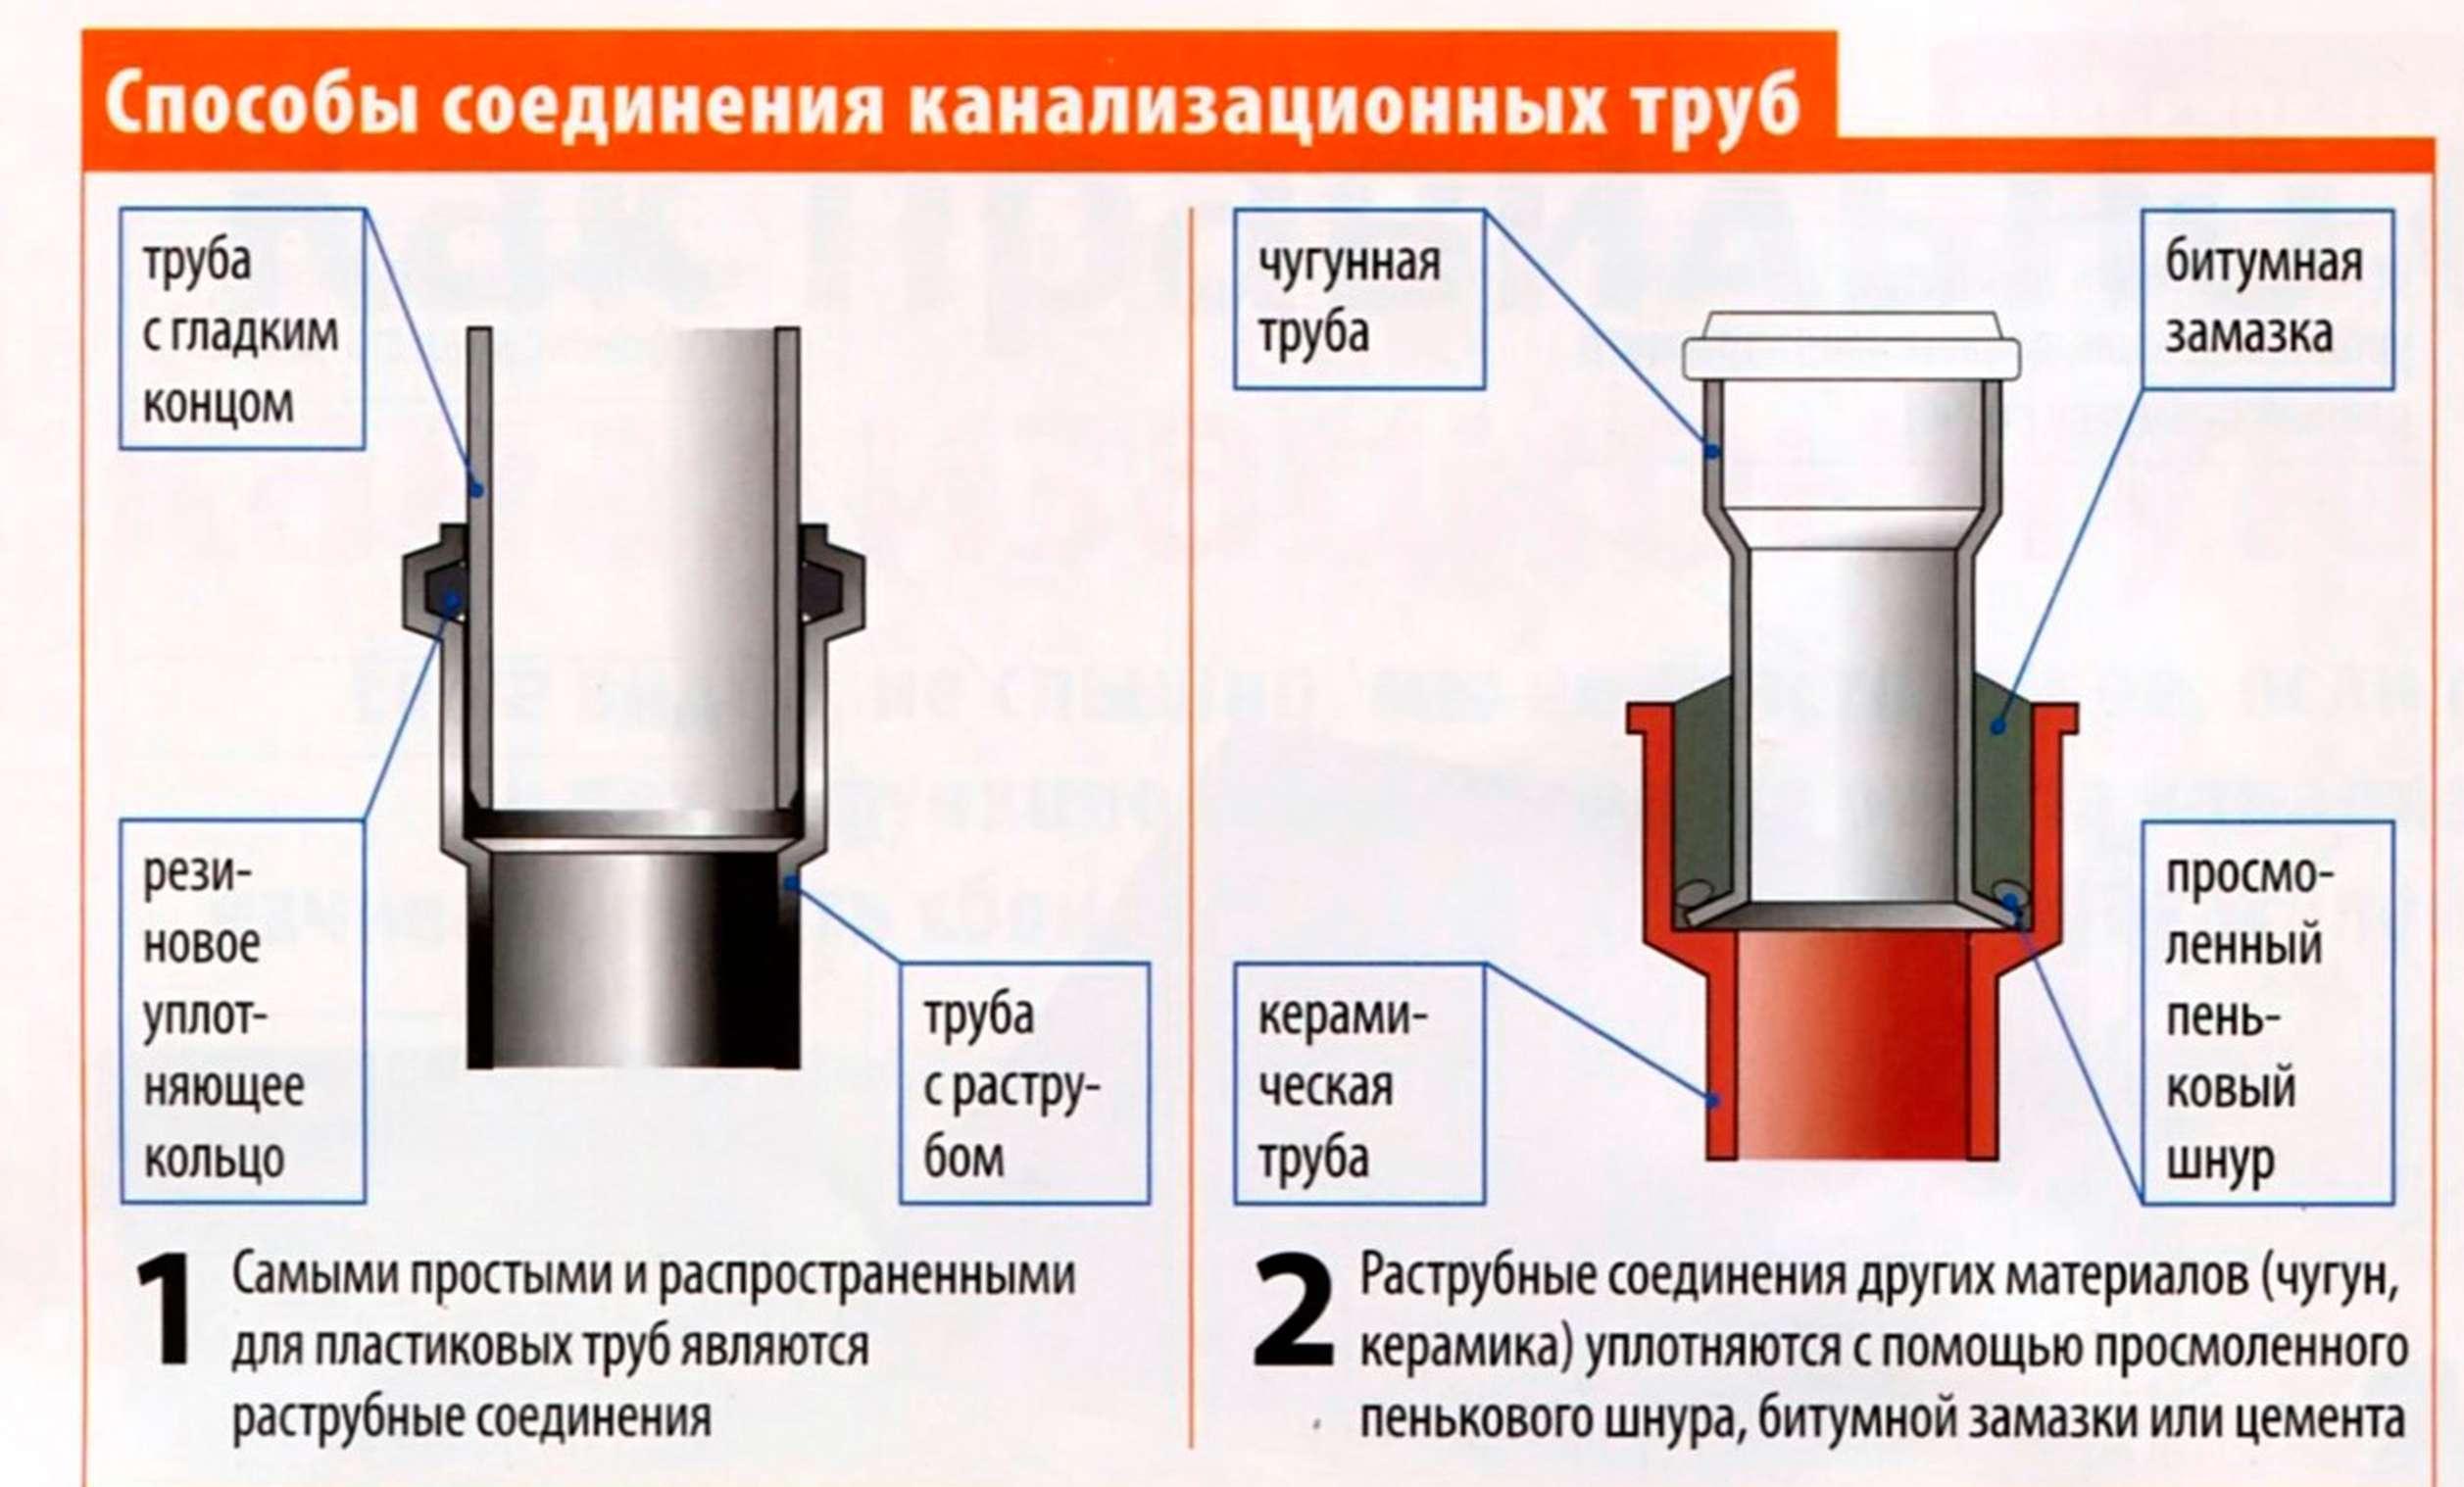 Технические характеристики и особенности использования полипропиленовых труб в канализации